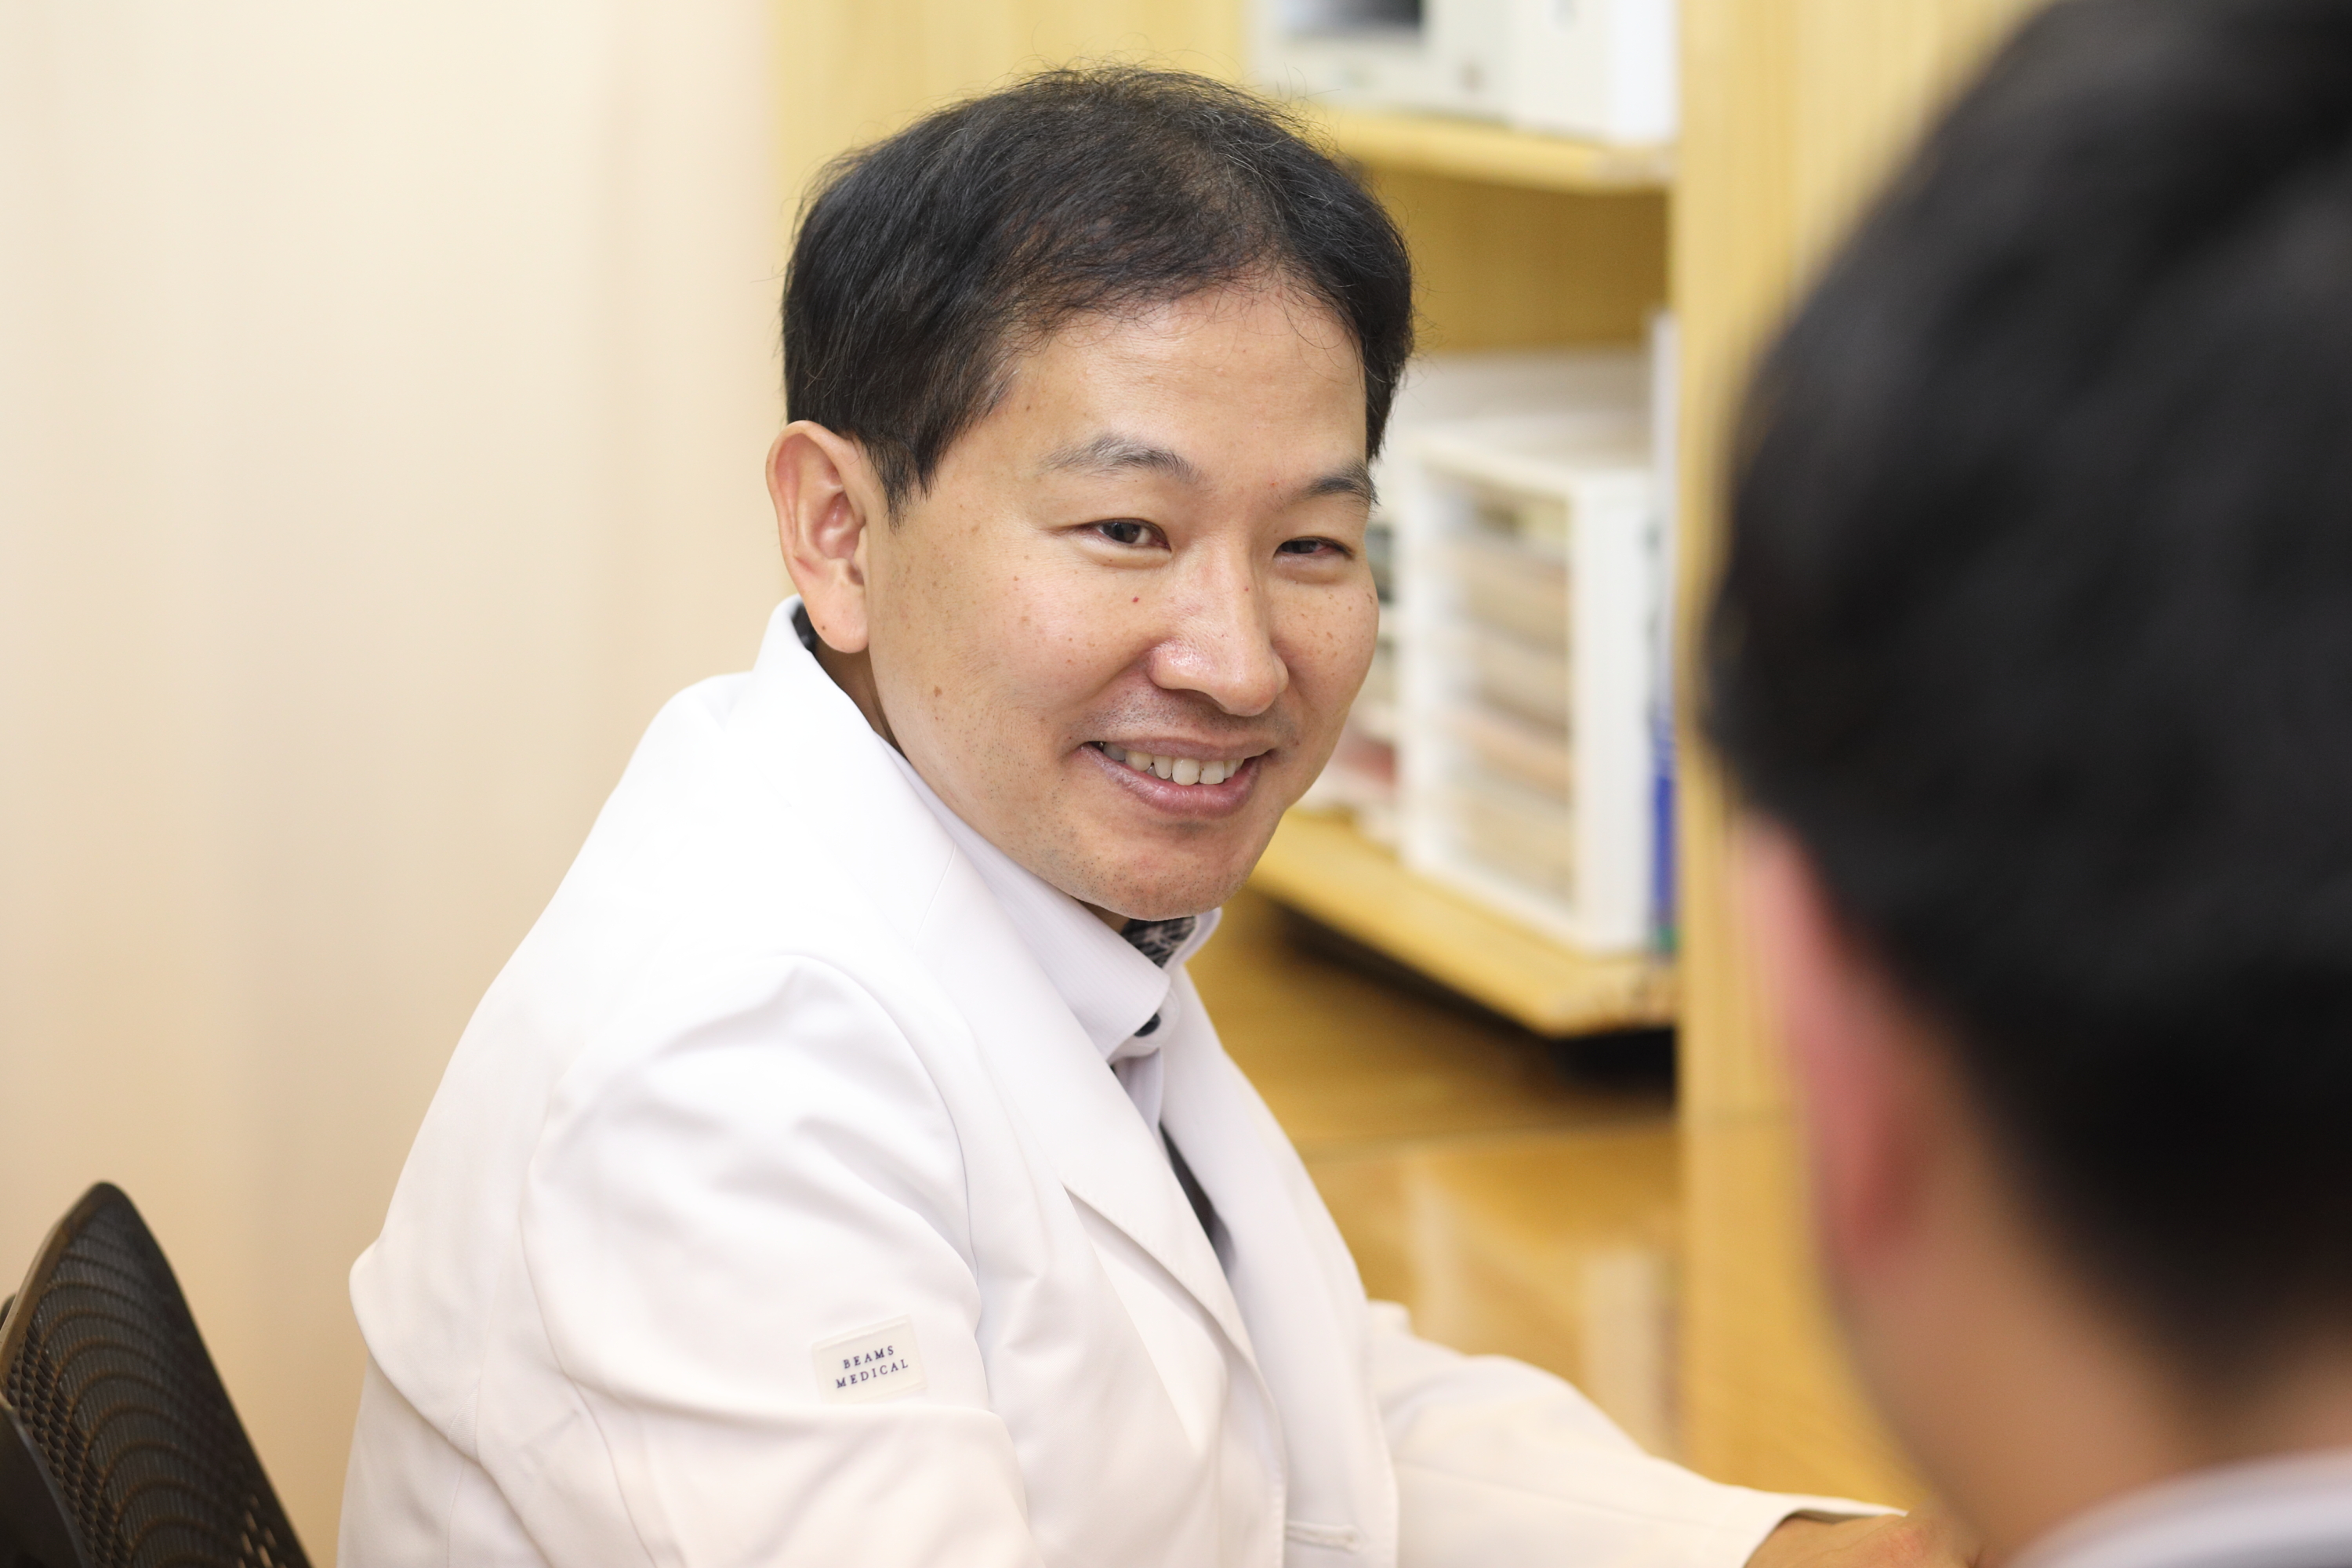 生活習慣病の治療に高い専門性をもつ「日本糖尿病学会」「日本動脈硬化学会」専門医・指導医が診療。